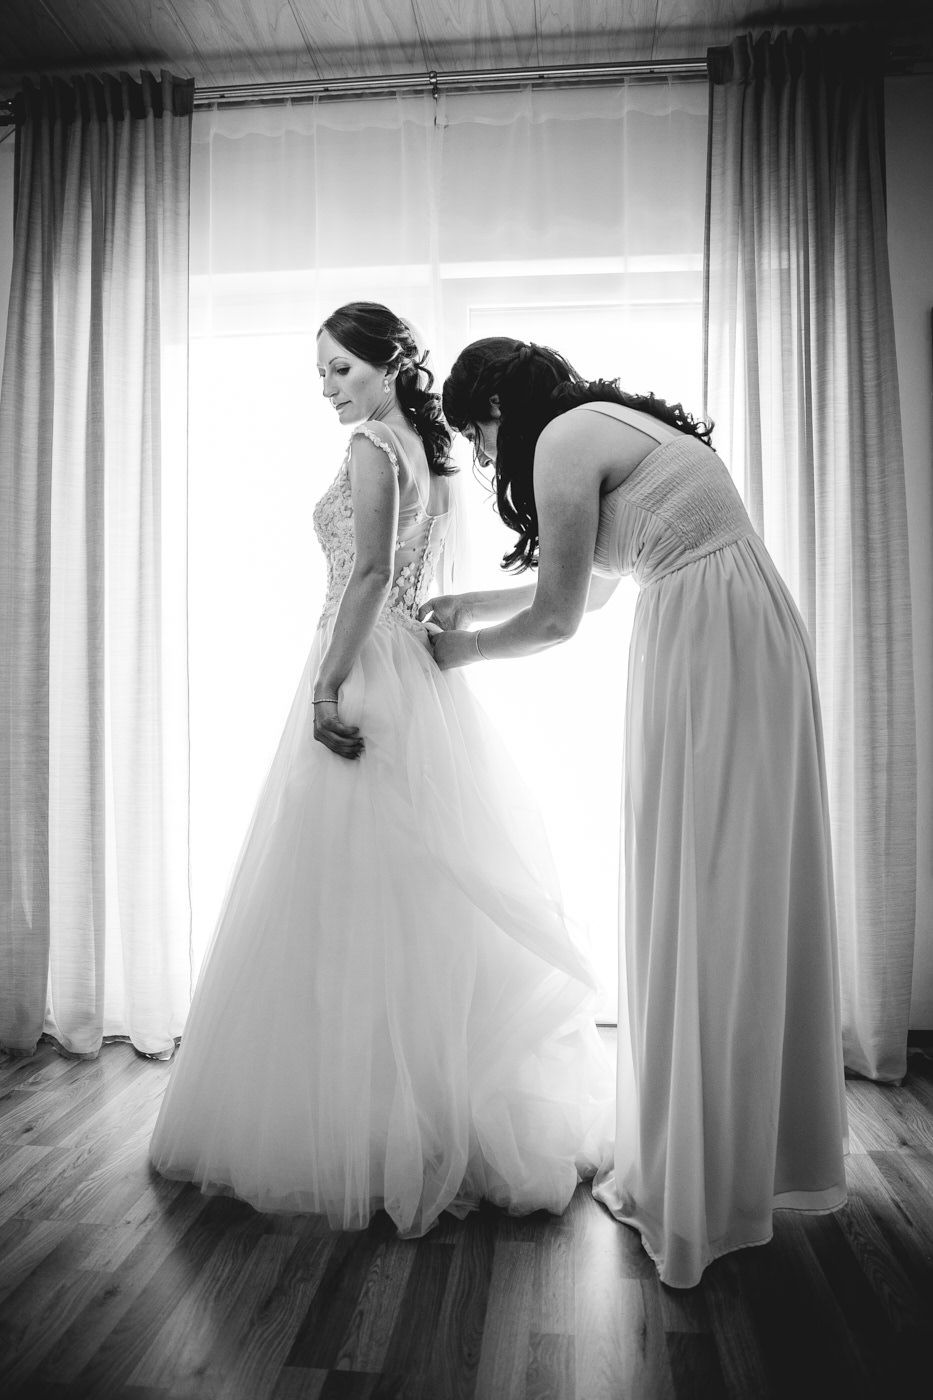 Trauzeugin macht der Braut am lichterfülltem Fenster das Kleid zu, schwarz weiß. Hochzeitsfotograf in Bad Ems.